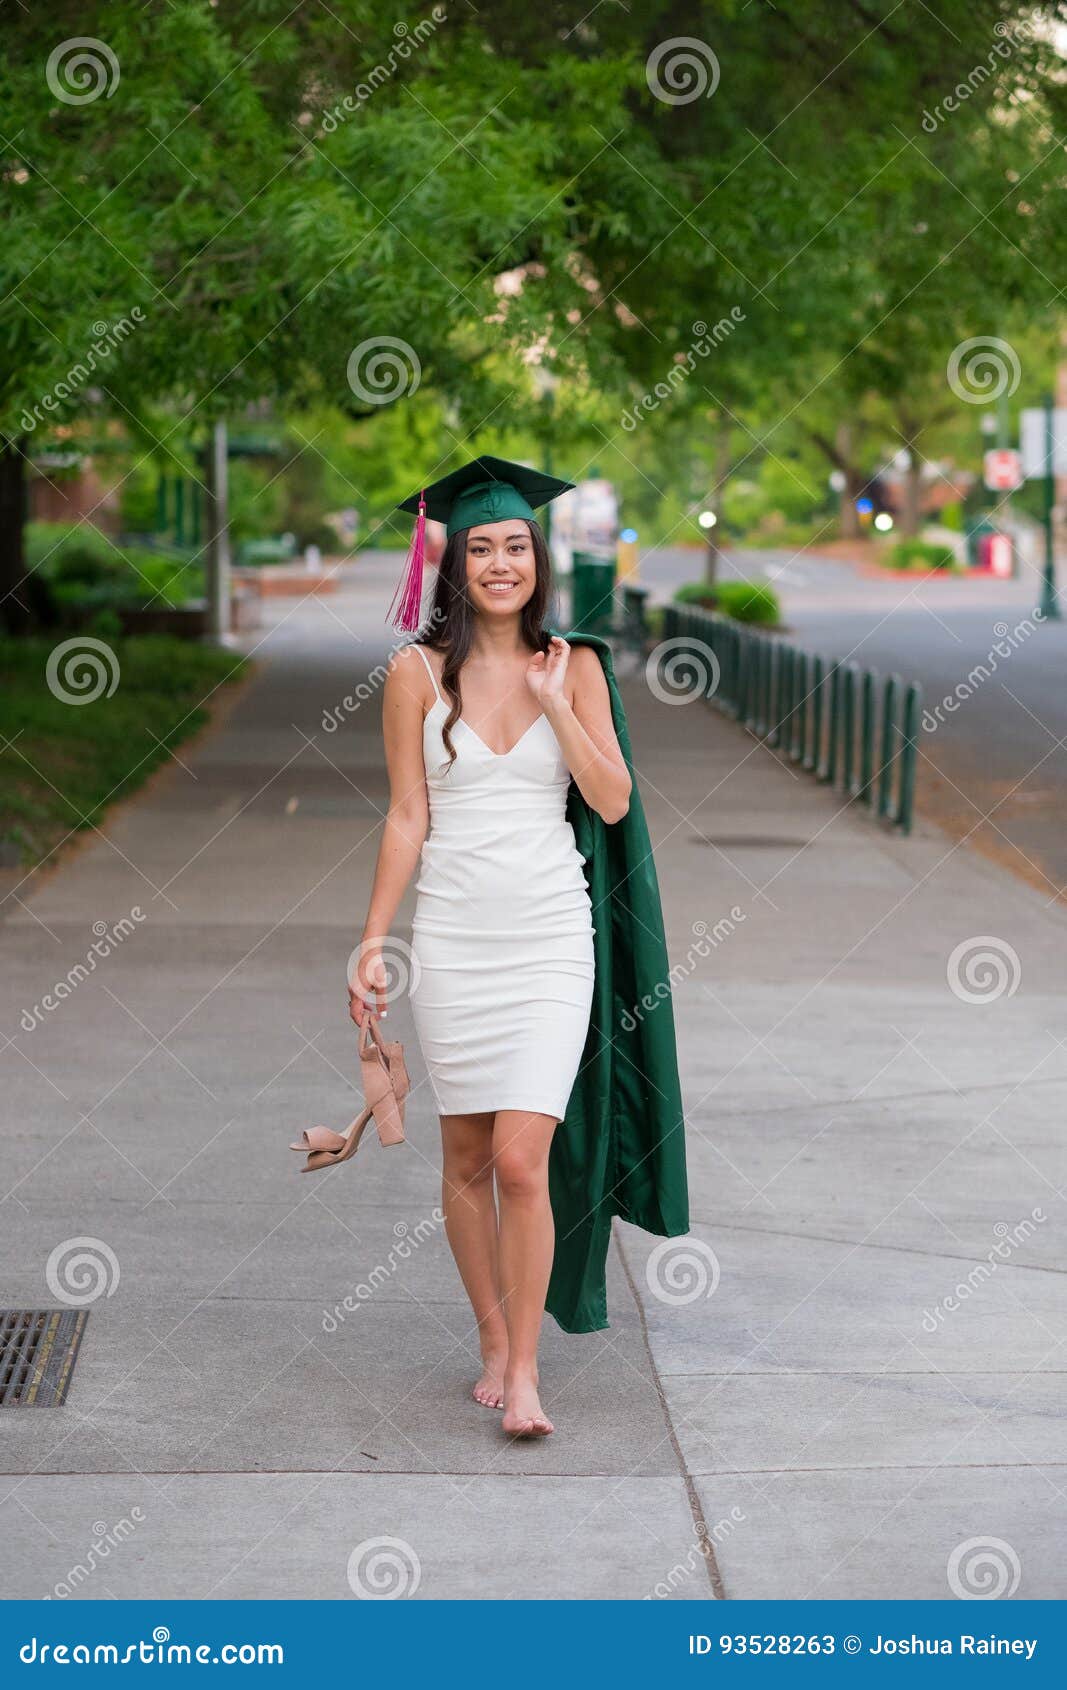 Foto De La Graduación De La Universidad Campus Universitario Imagen de archivo - Imagen de hembra, persona: 93528263